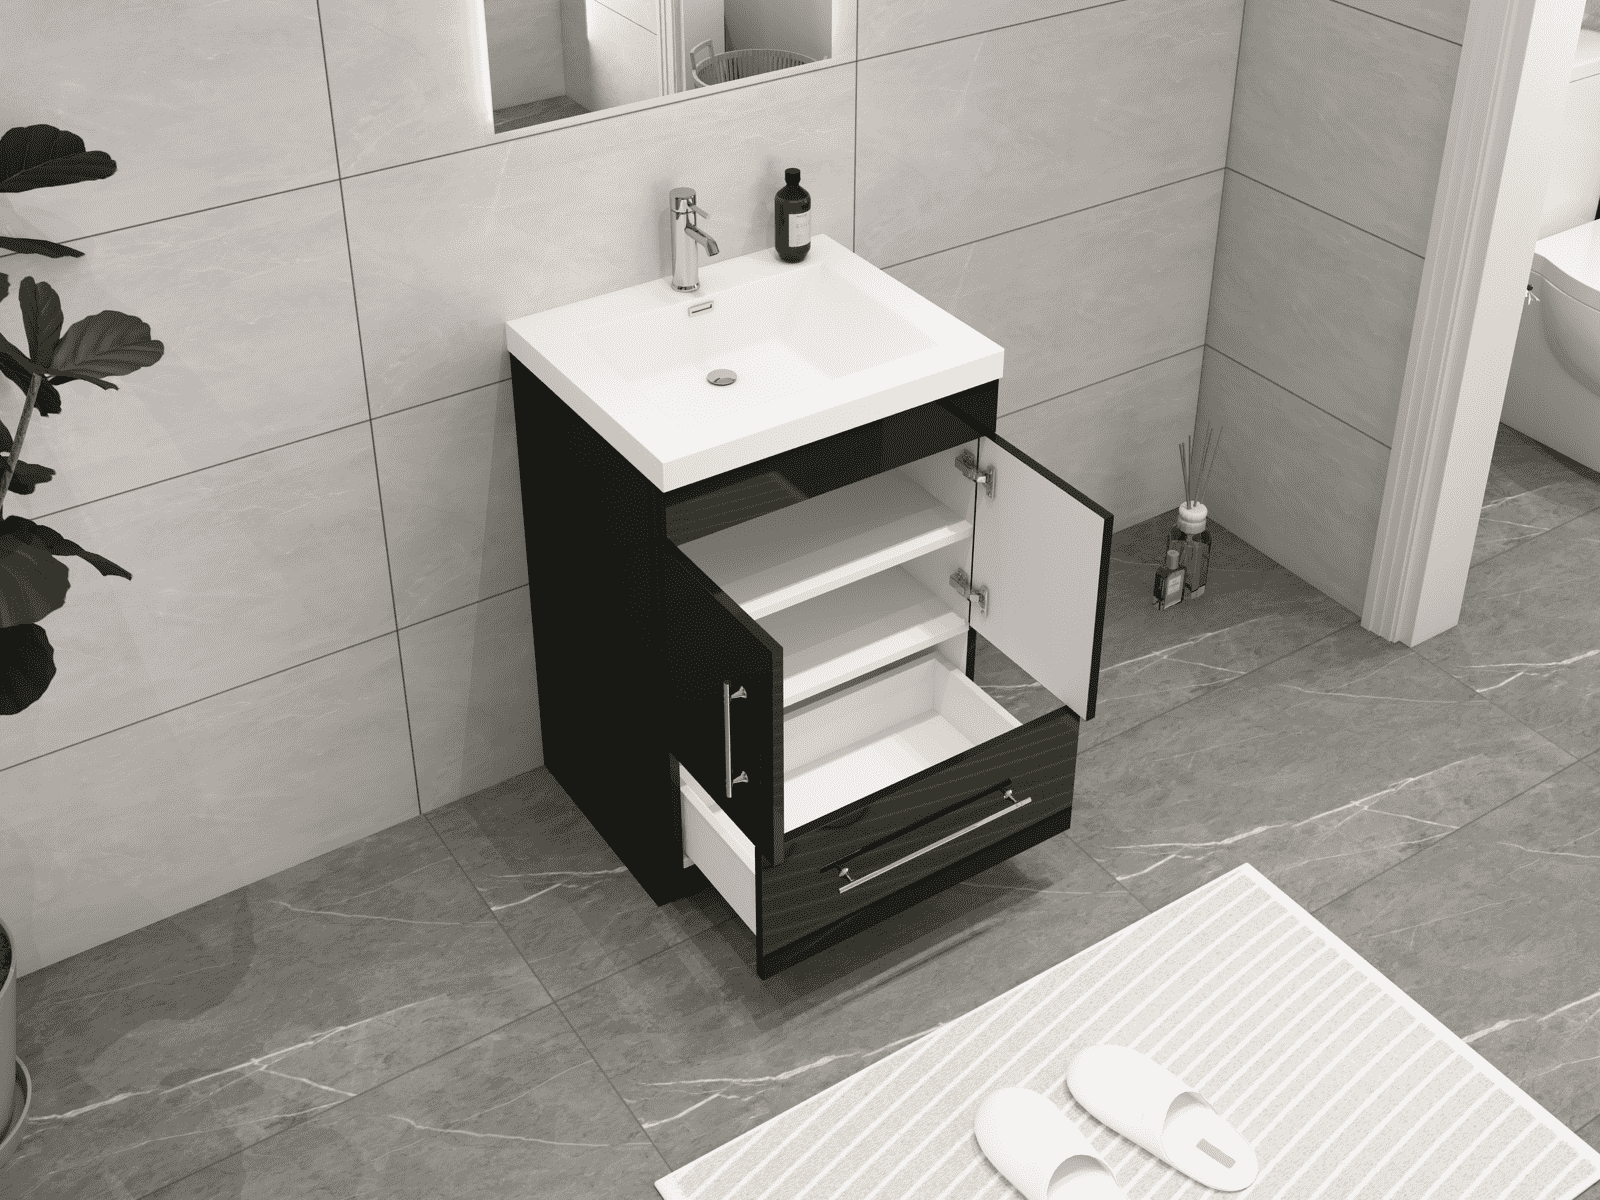 Elsa 24" Freestanding Bathroom Vanity with Reinforced Acrylic Sink in Gloss Black | Better Vanity